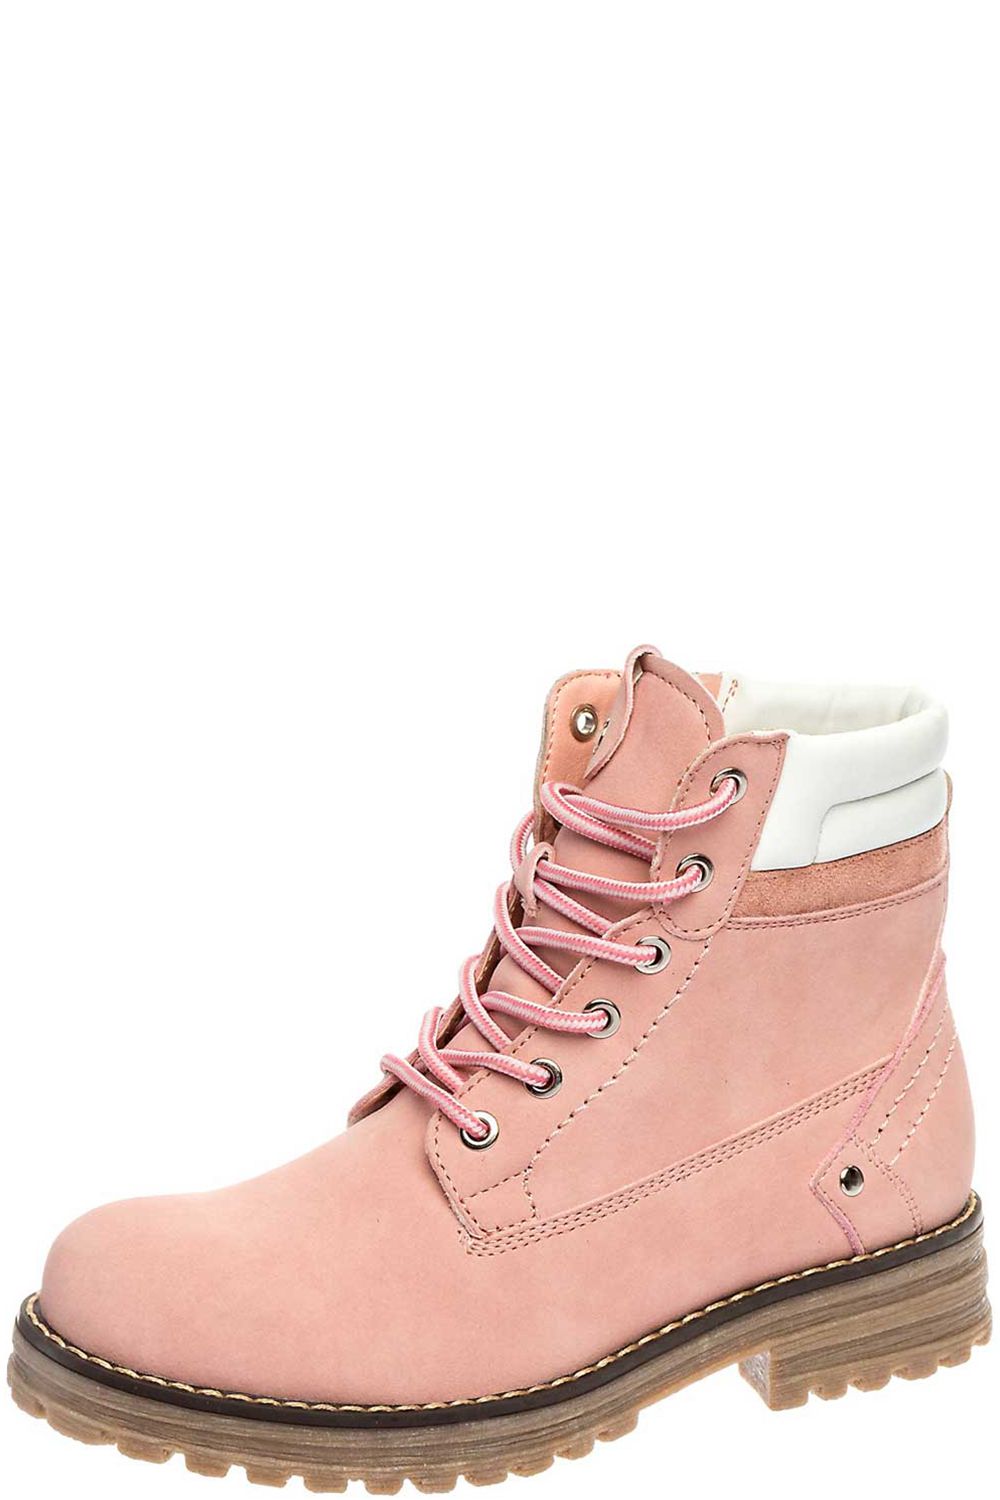 Ботинки Keddo, размер 33, цвет розовый - фото 1